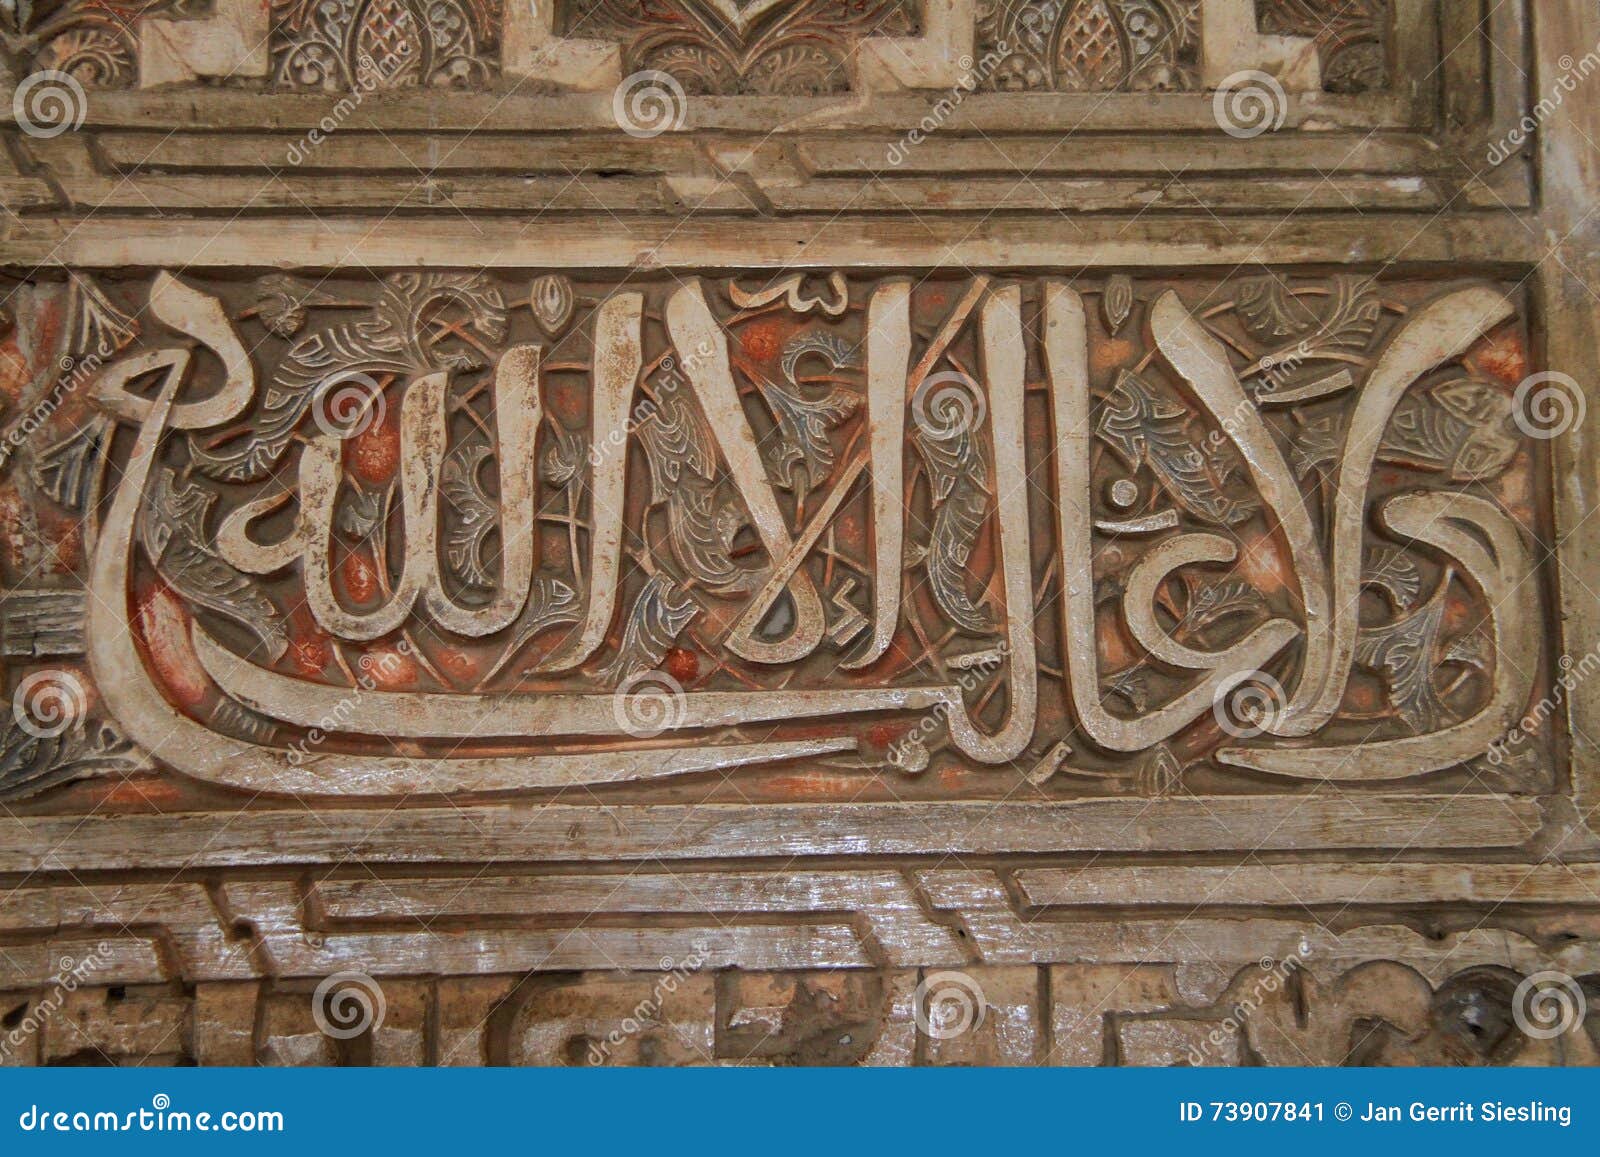 Arabische Schreiben in Alhambra-Palast. Arabische Schreiben auf der Wand in Alhambra-Palast in Spanien